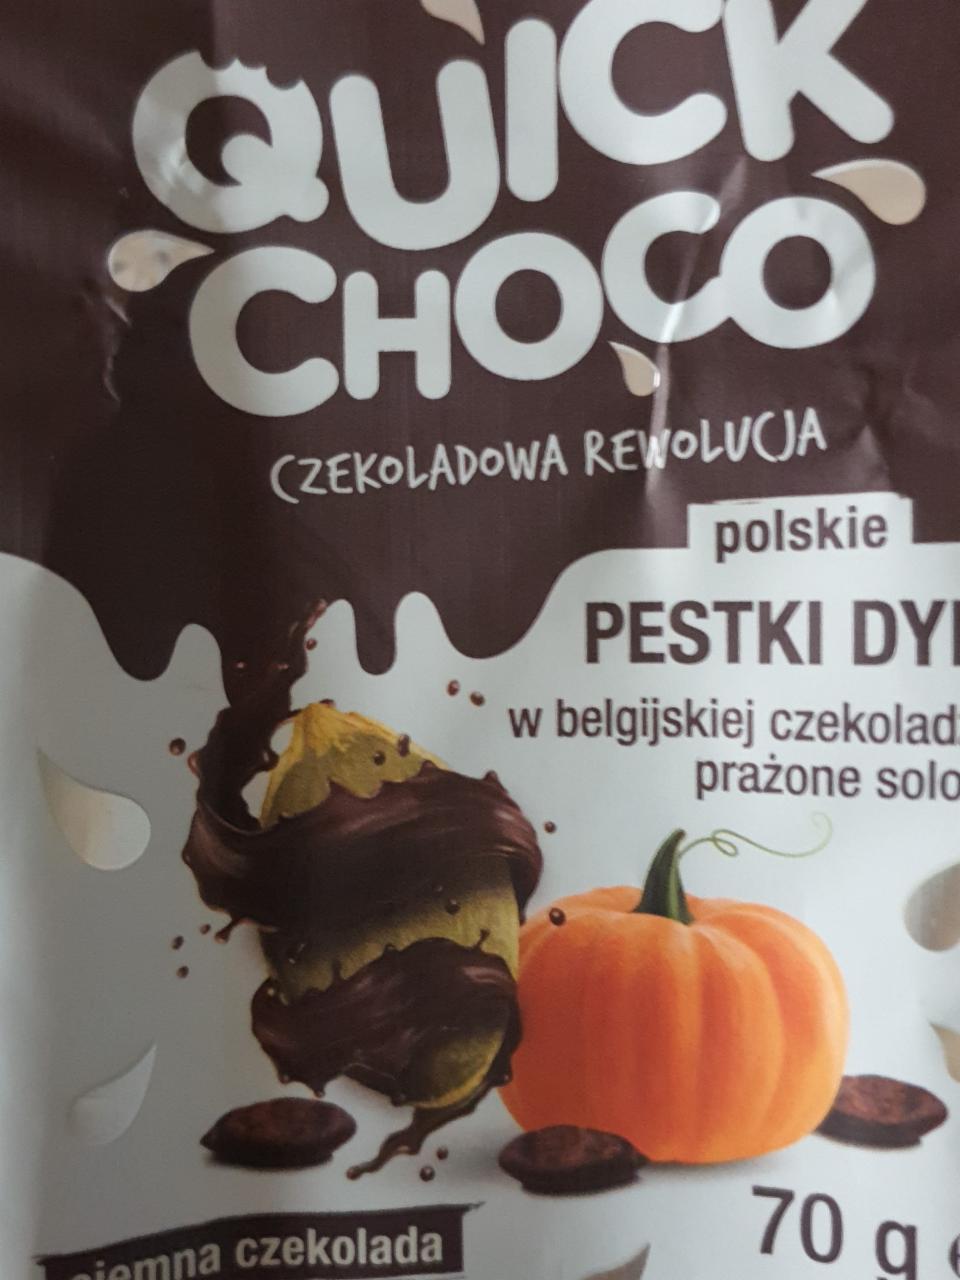 Fotografie - Quick Choco pestki dyni prażone solone w ciemnej czekoladzie Moreso